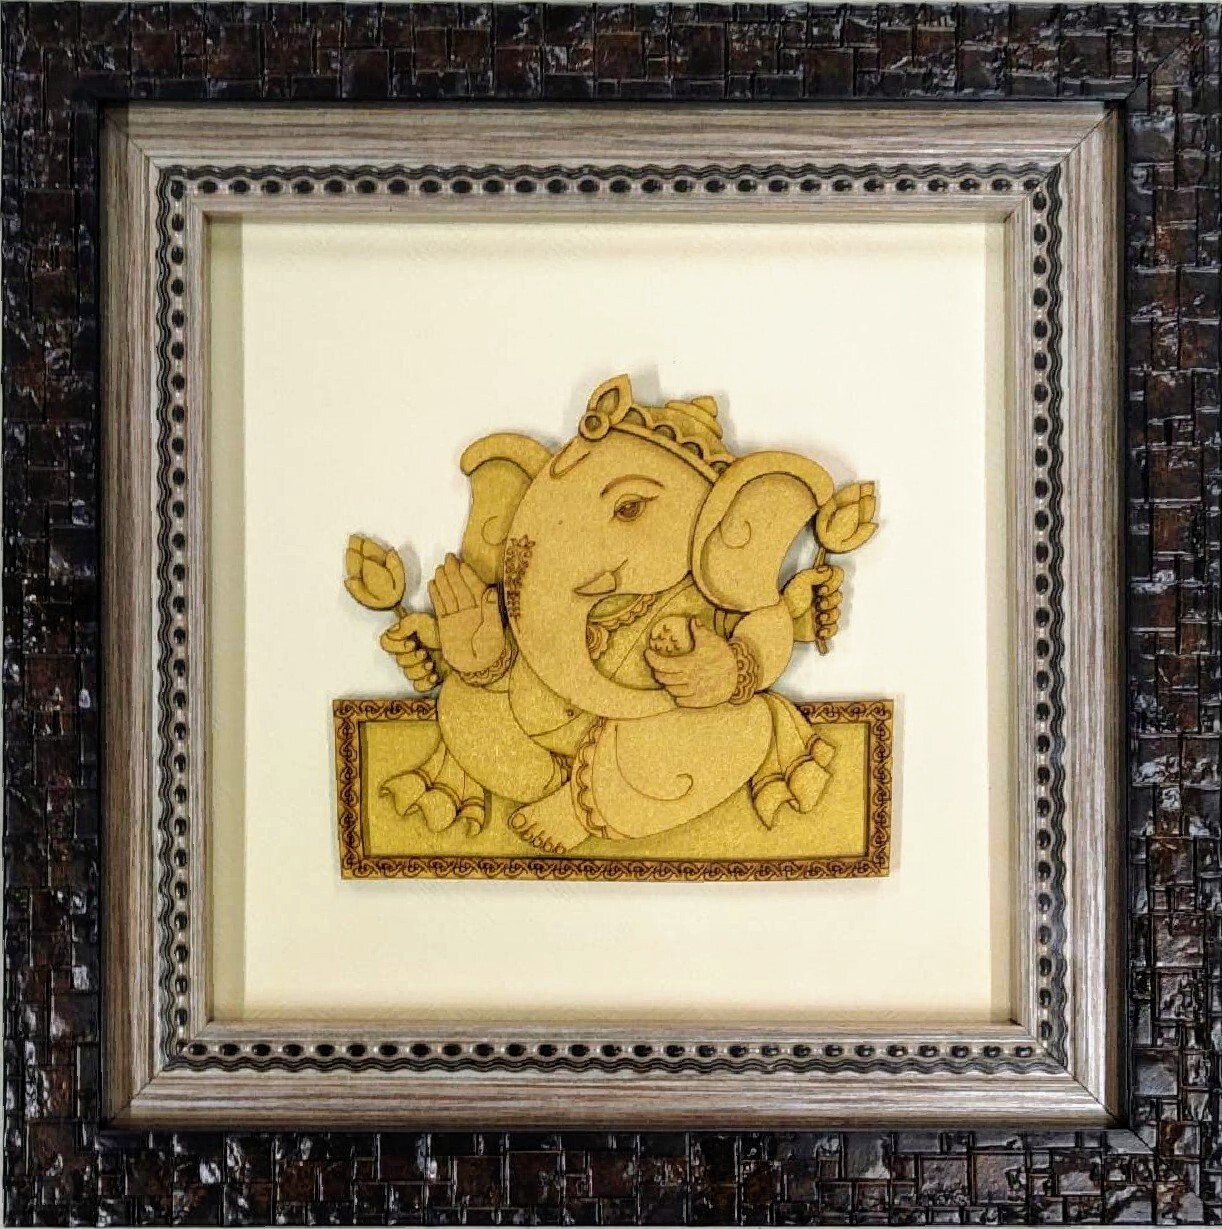 Lord Ganesh - 10" x 10" Wood work Photo Frame